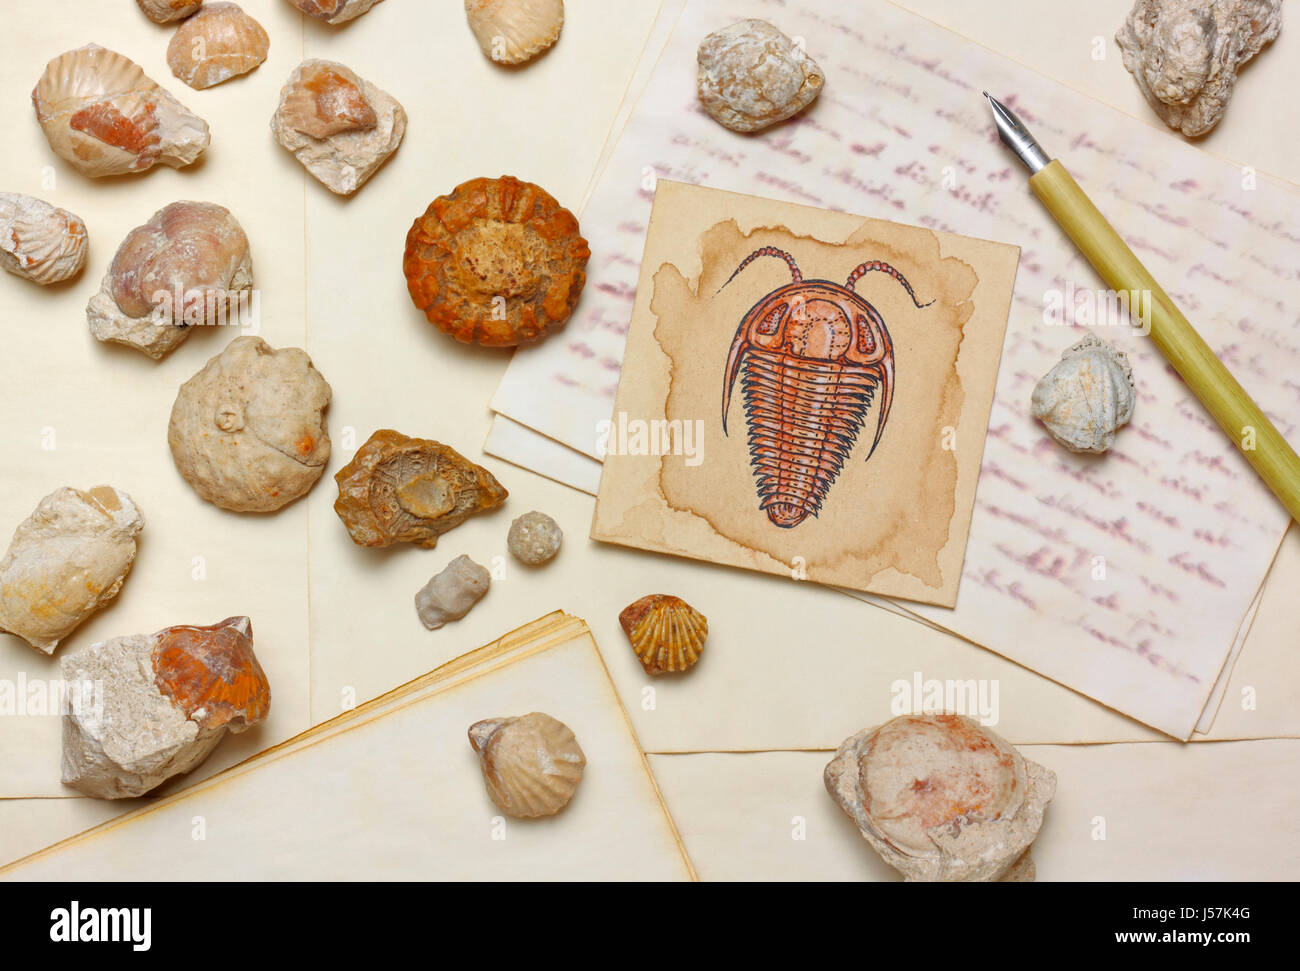 Bodegón con nostálgico, dibujo de trilobites fósiles marinos y antique nib lápiz sobre hojas de papel envejecido Foto de stock